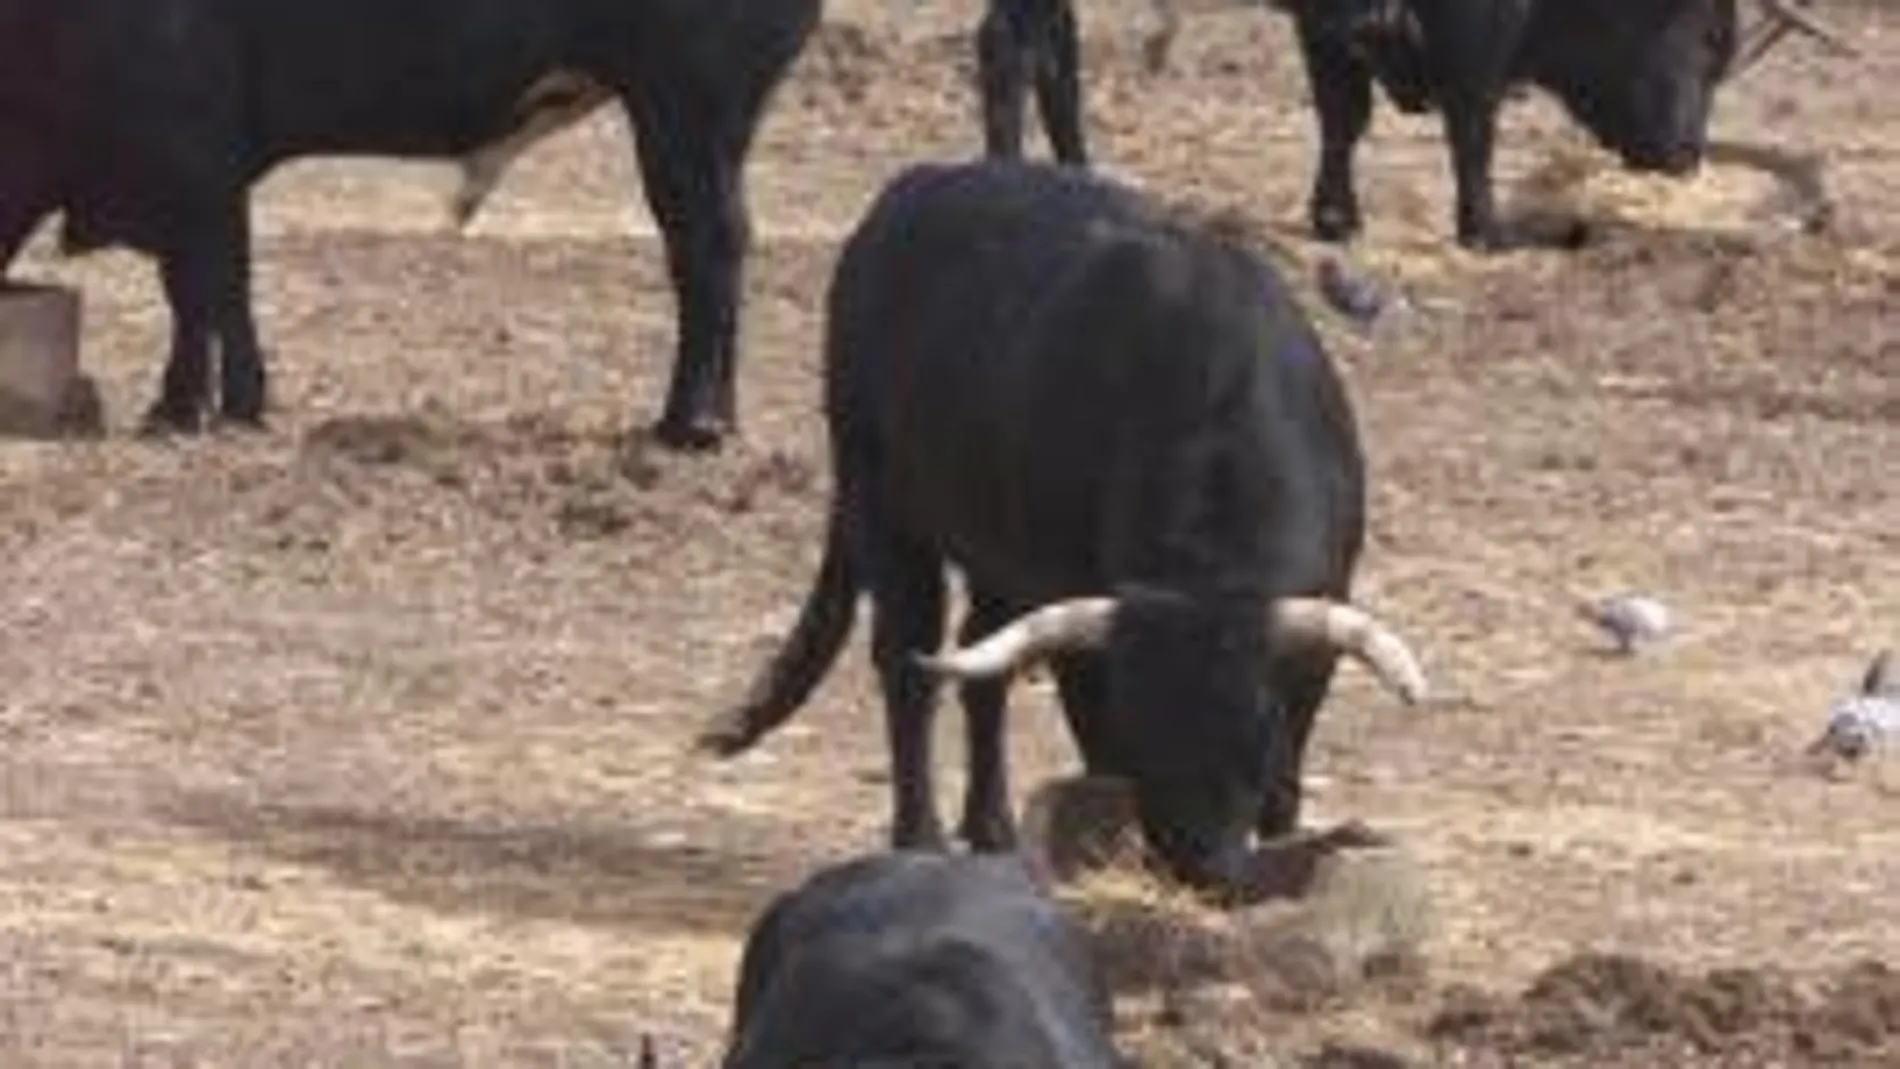 El toro de lidia salta al laboratorio tras la primera clonación en España. Imagen de archivo de reses bravas (AP).